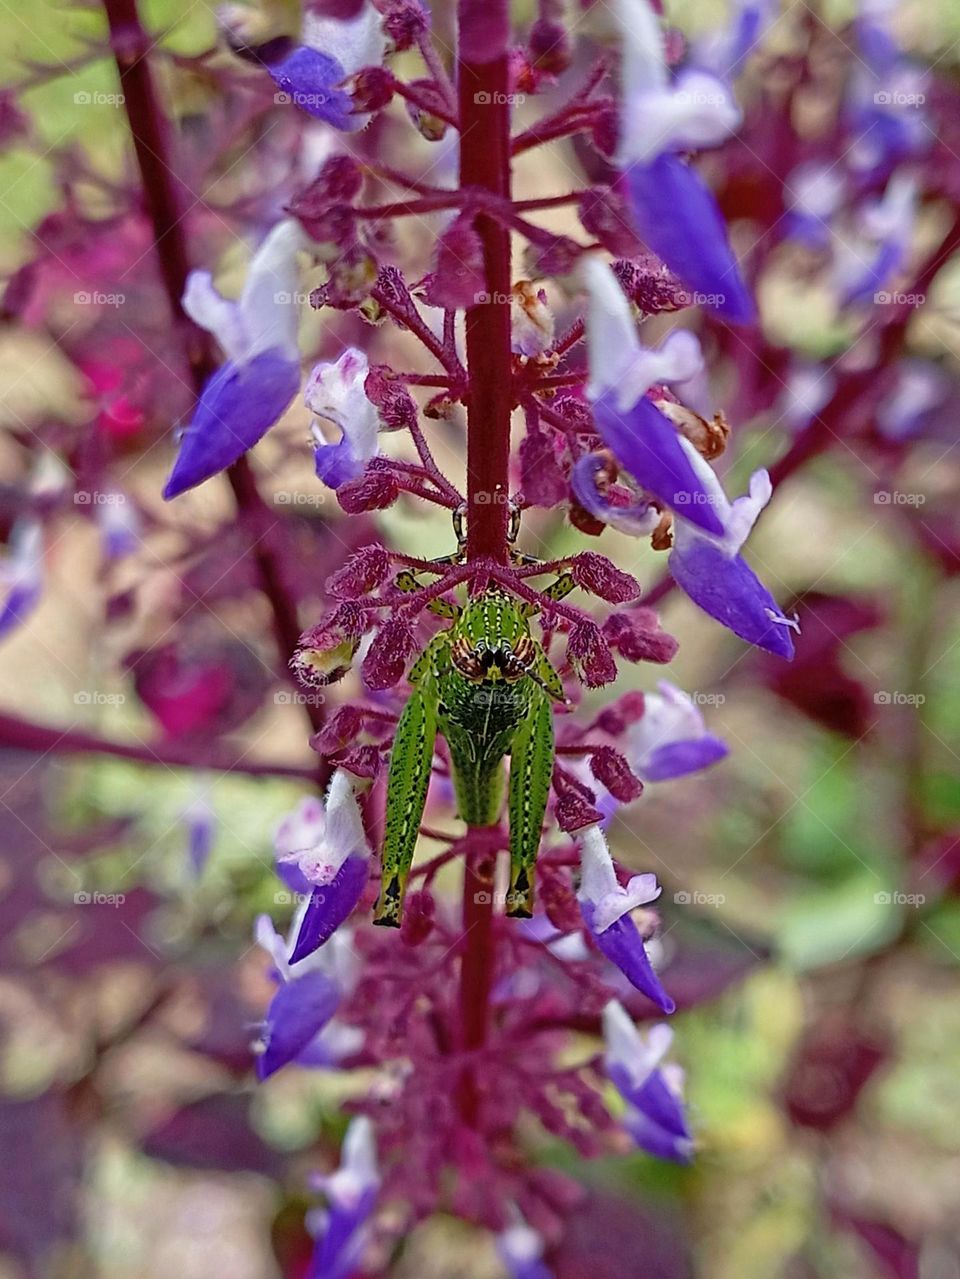 Flower and grasshopper.